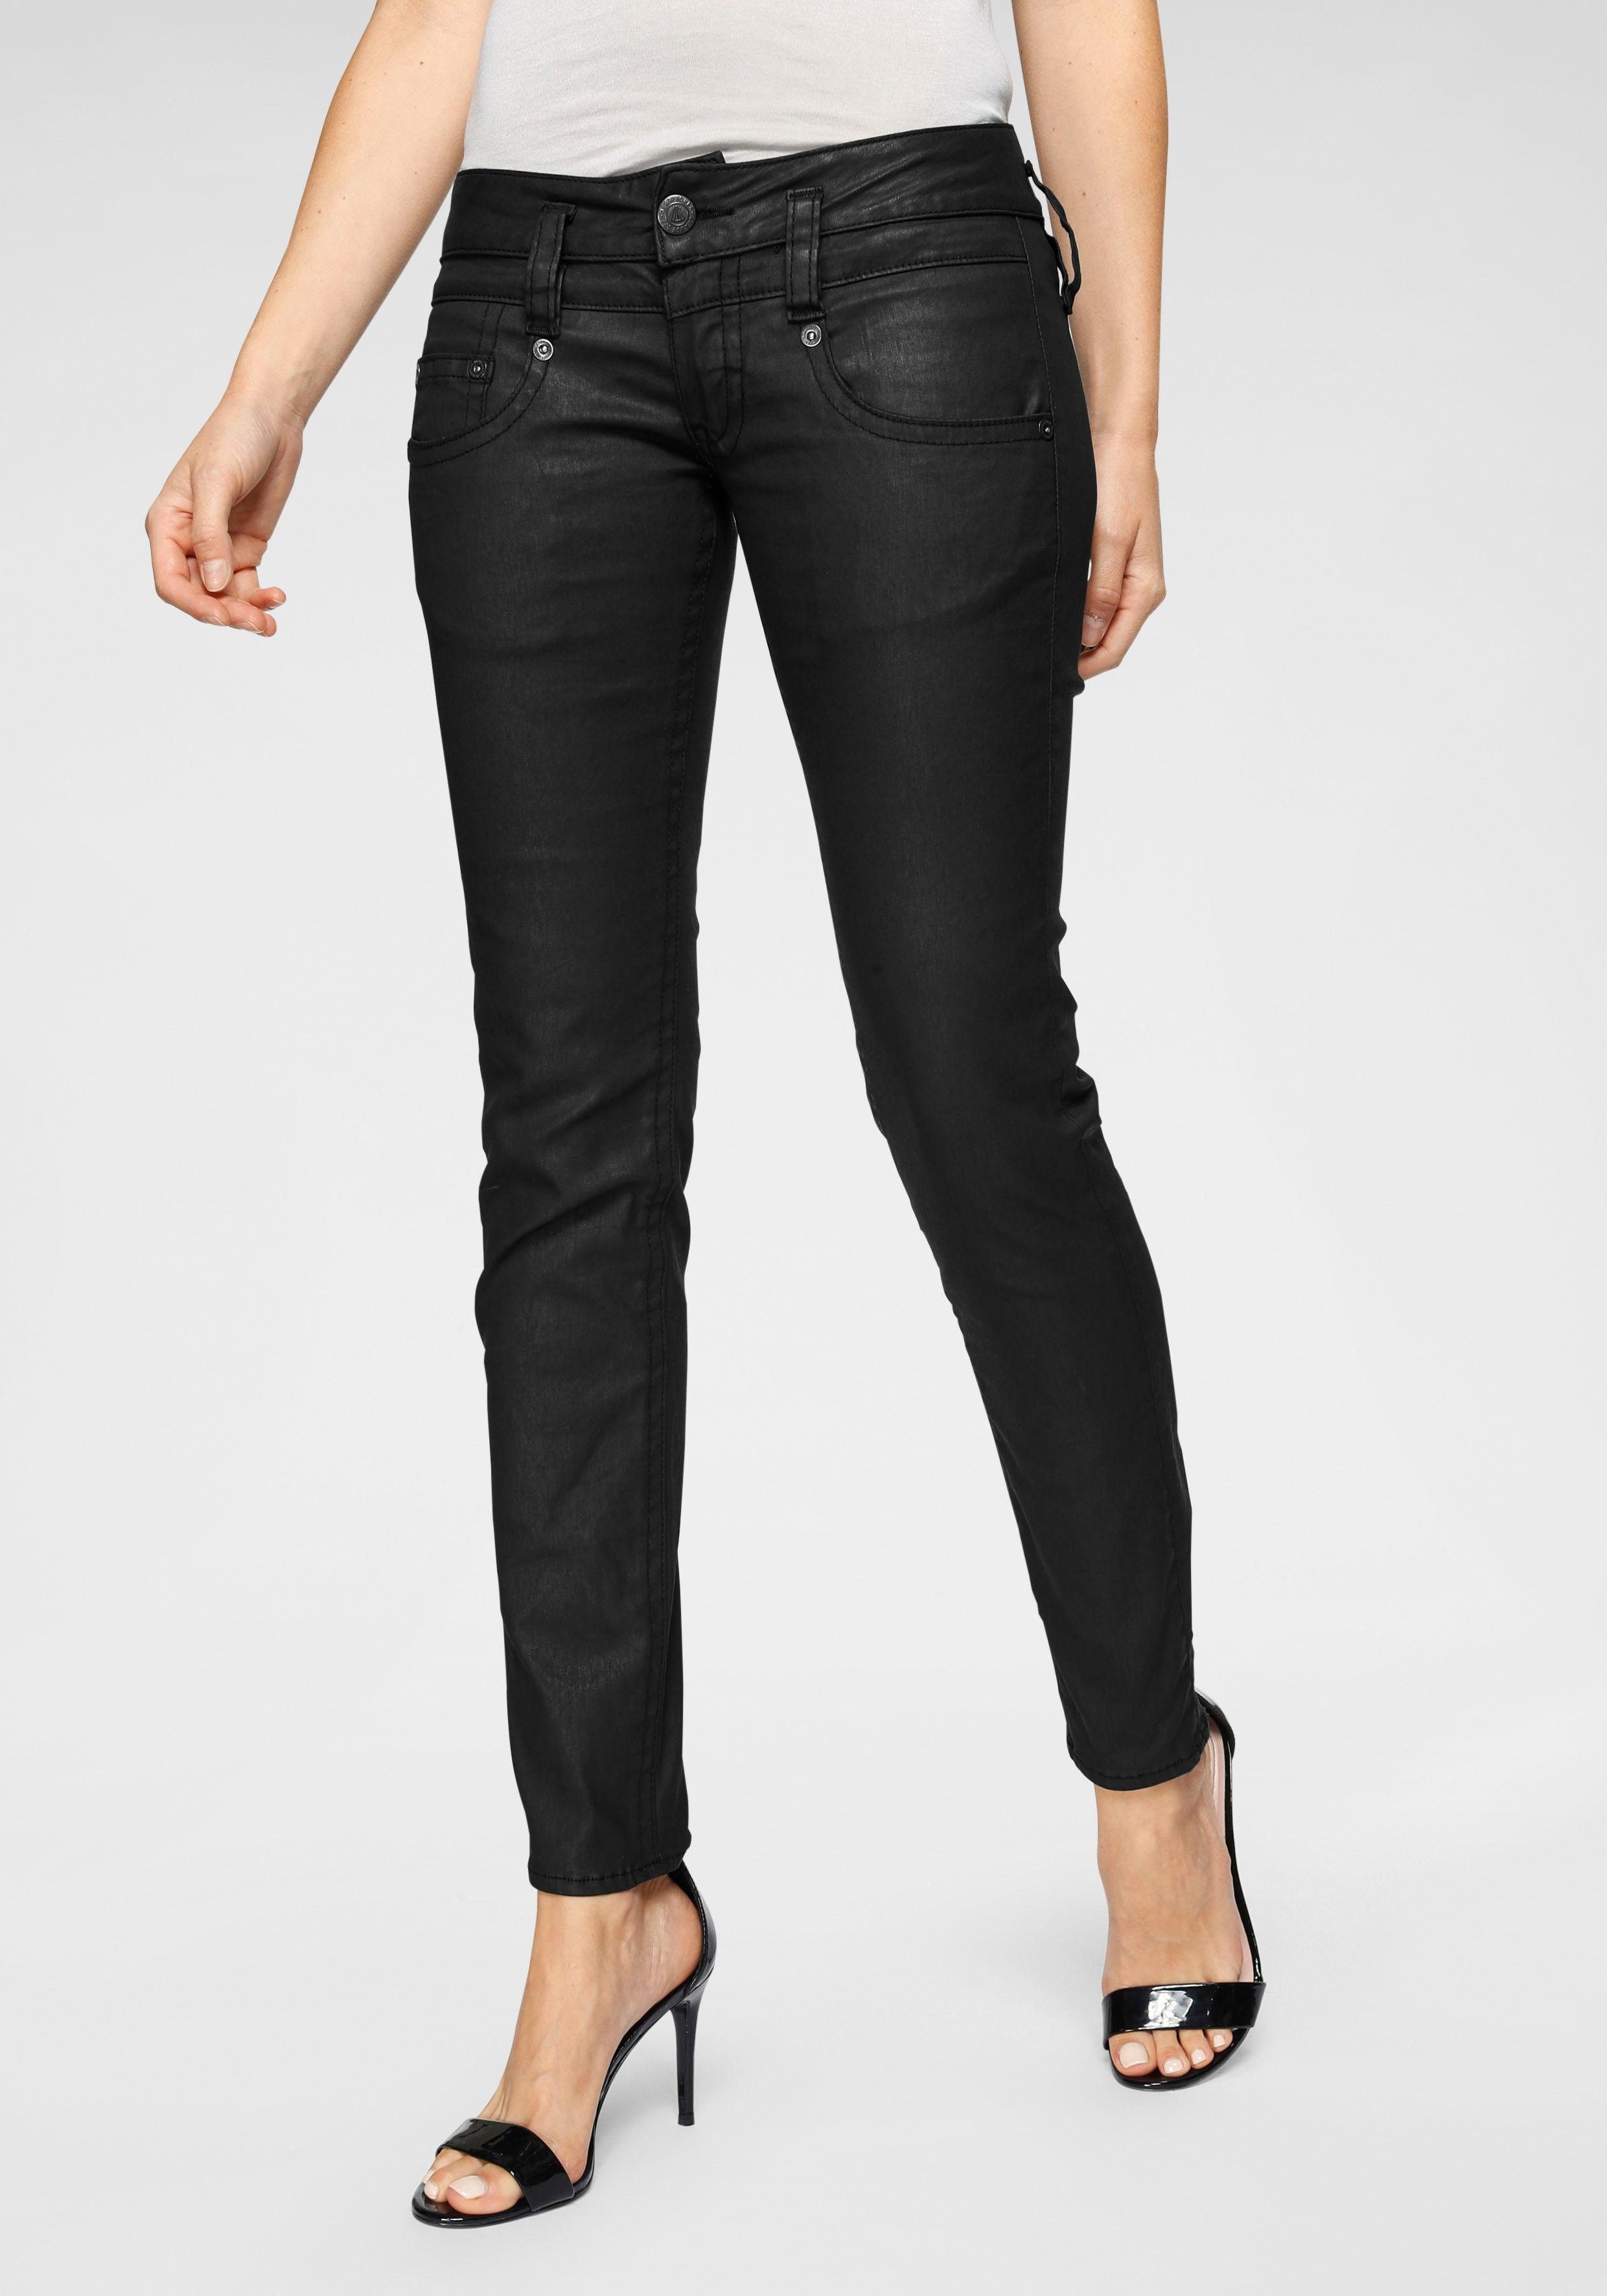 Schwarze Jeans mit niedrigem Bund für Damen kaufen | OTTO